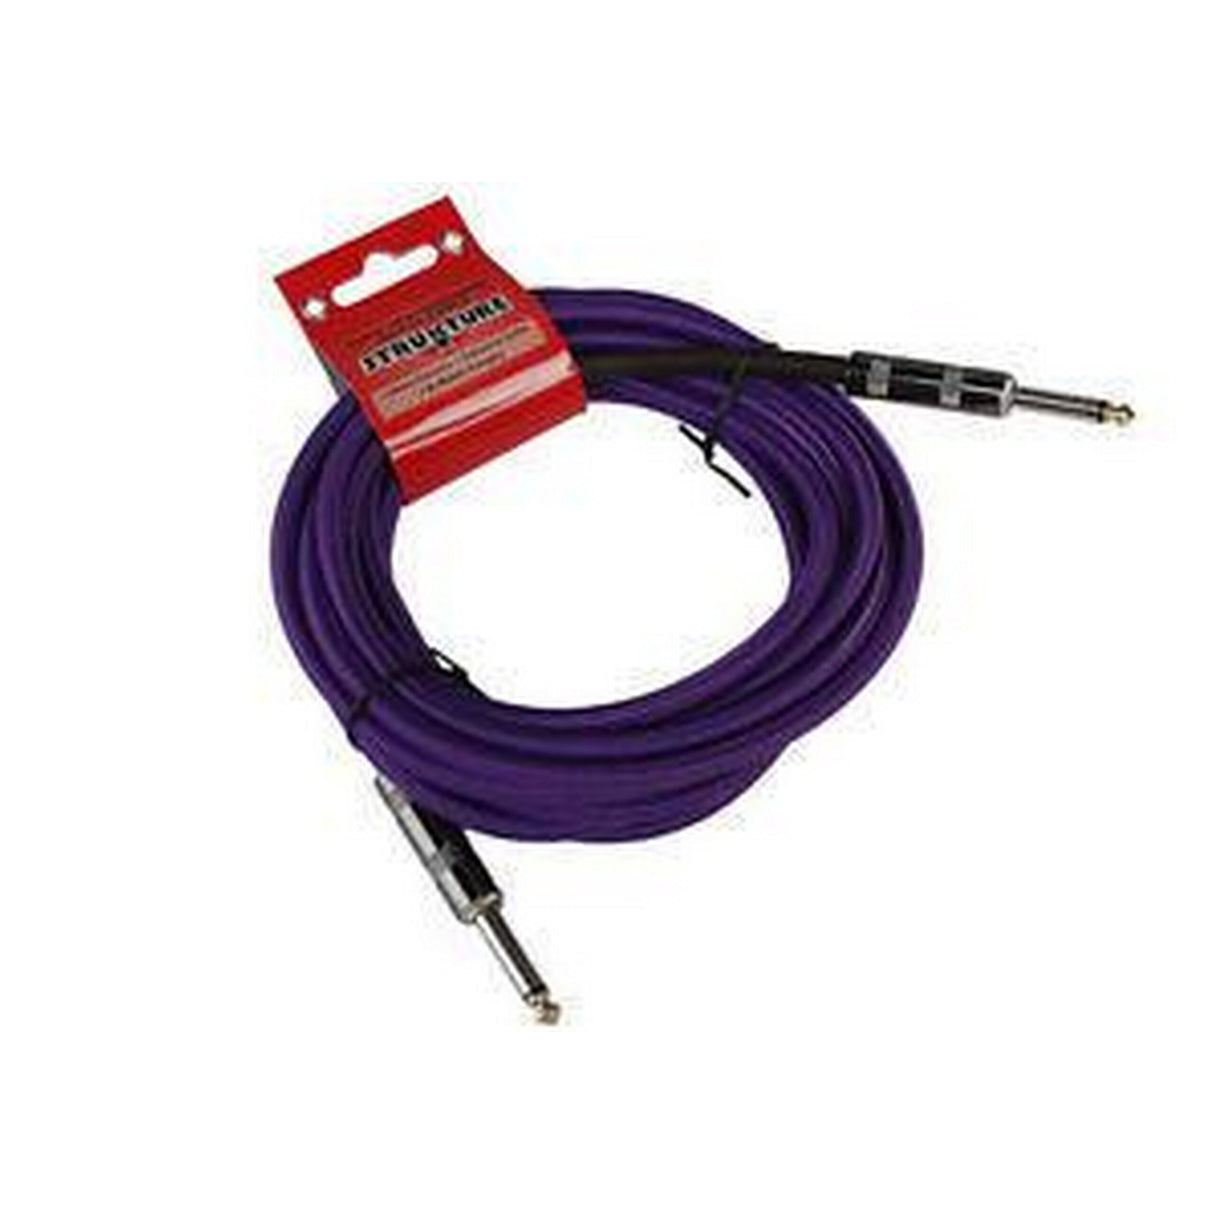 Strukture SC186PP 18.6-Foot Instrument Cable, Woven, Purple